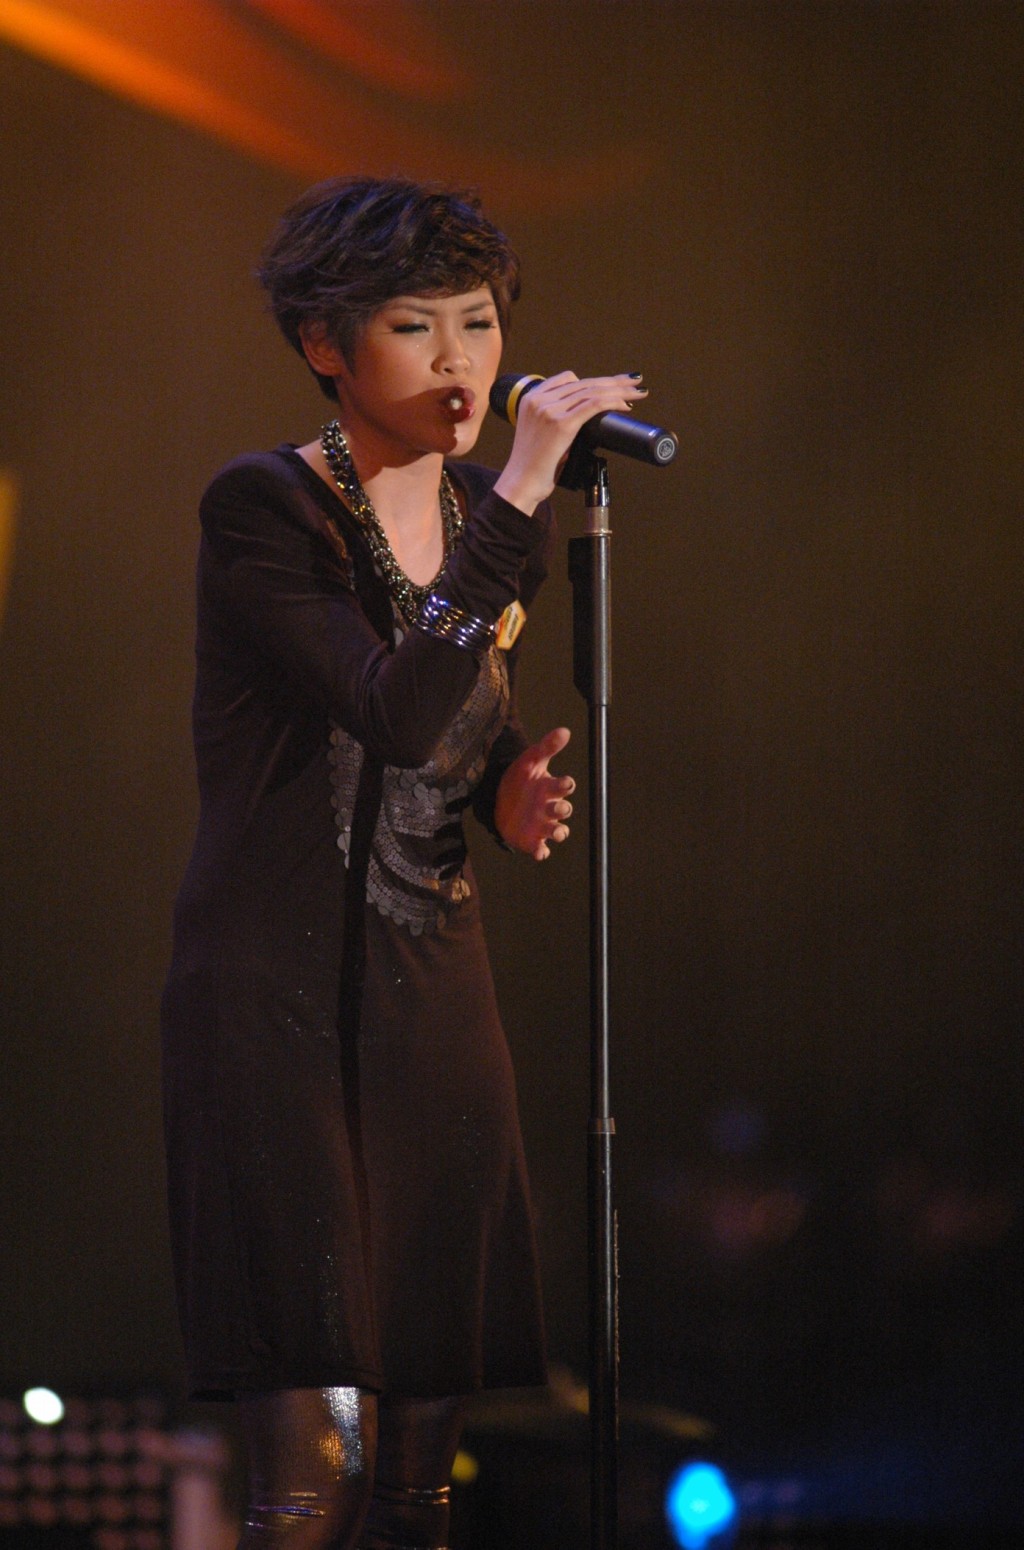 現年32歲的陳蕾2009年參加《亞洲星光大道》出道。